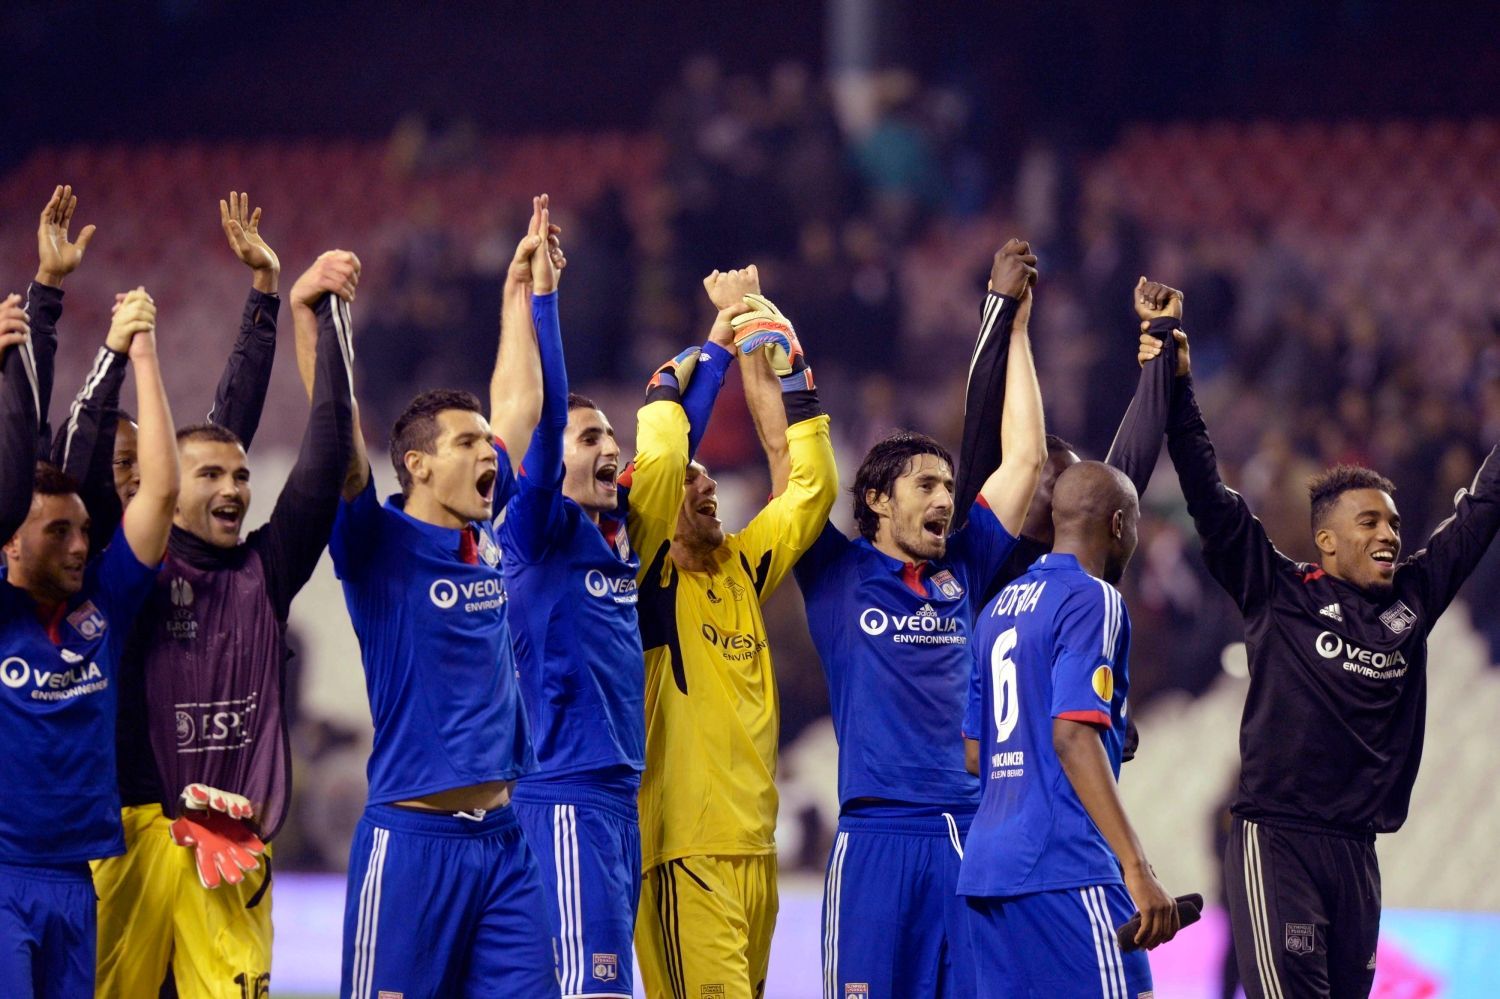 Fotbalisté Olympique Lyon slaví vítězství v utkání proti Athleticu Bilbao v Evropské lize 2012/13.